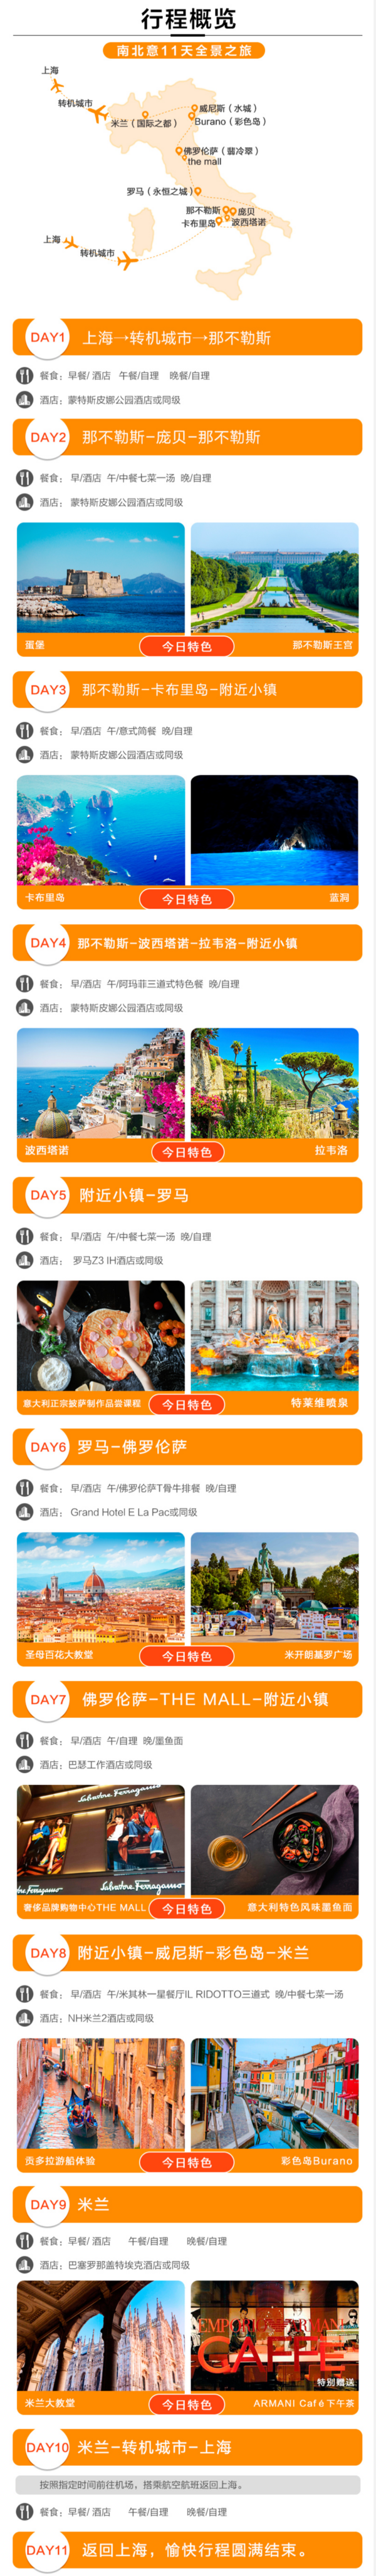 全景之旅！上海-意大利那不勒斯+罗马+威尼斯+米兰+卡布里岛11天9晚跟团游